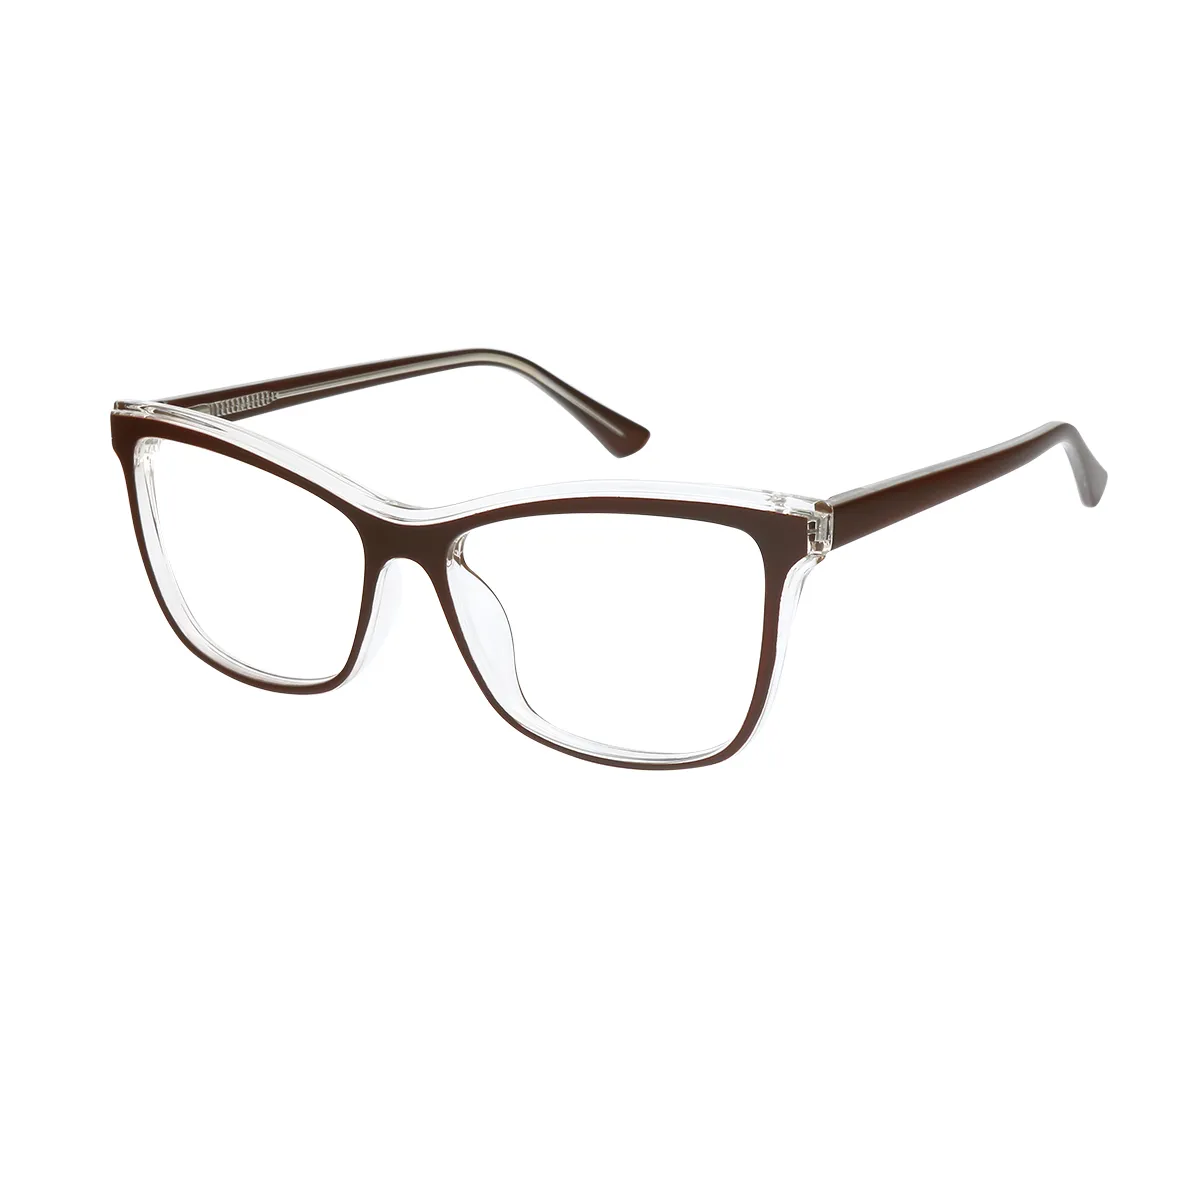 Resonance - Square Brown Glasses for Men & Women - EFE